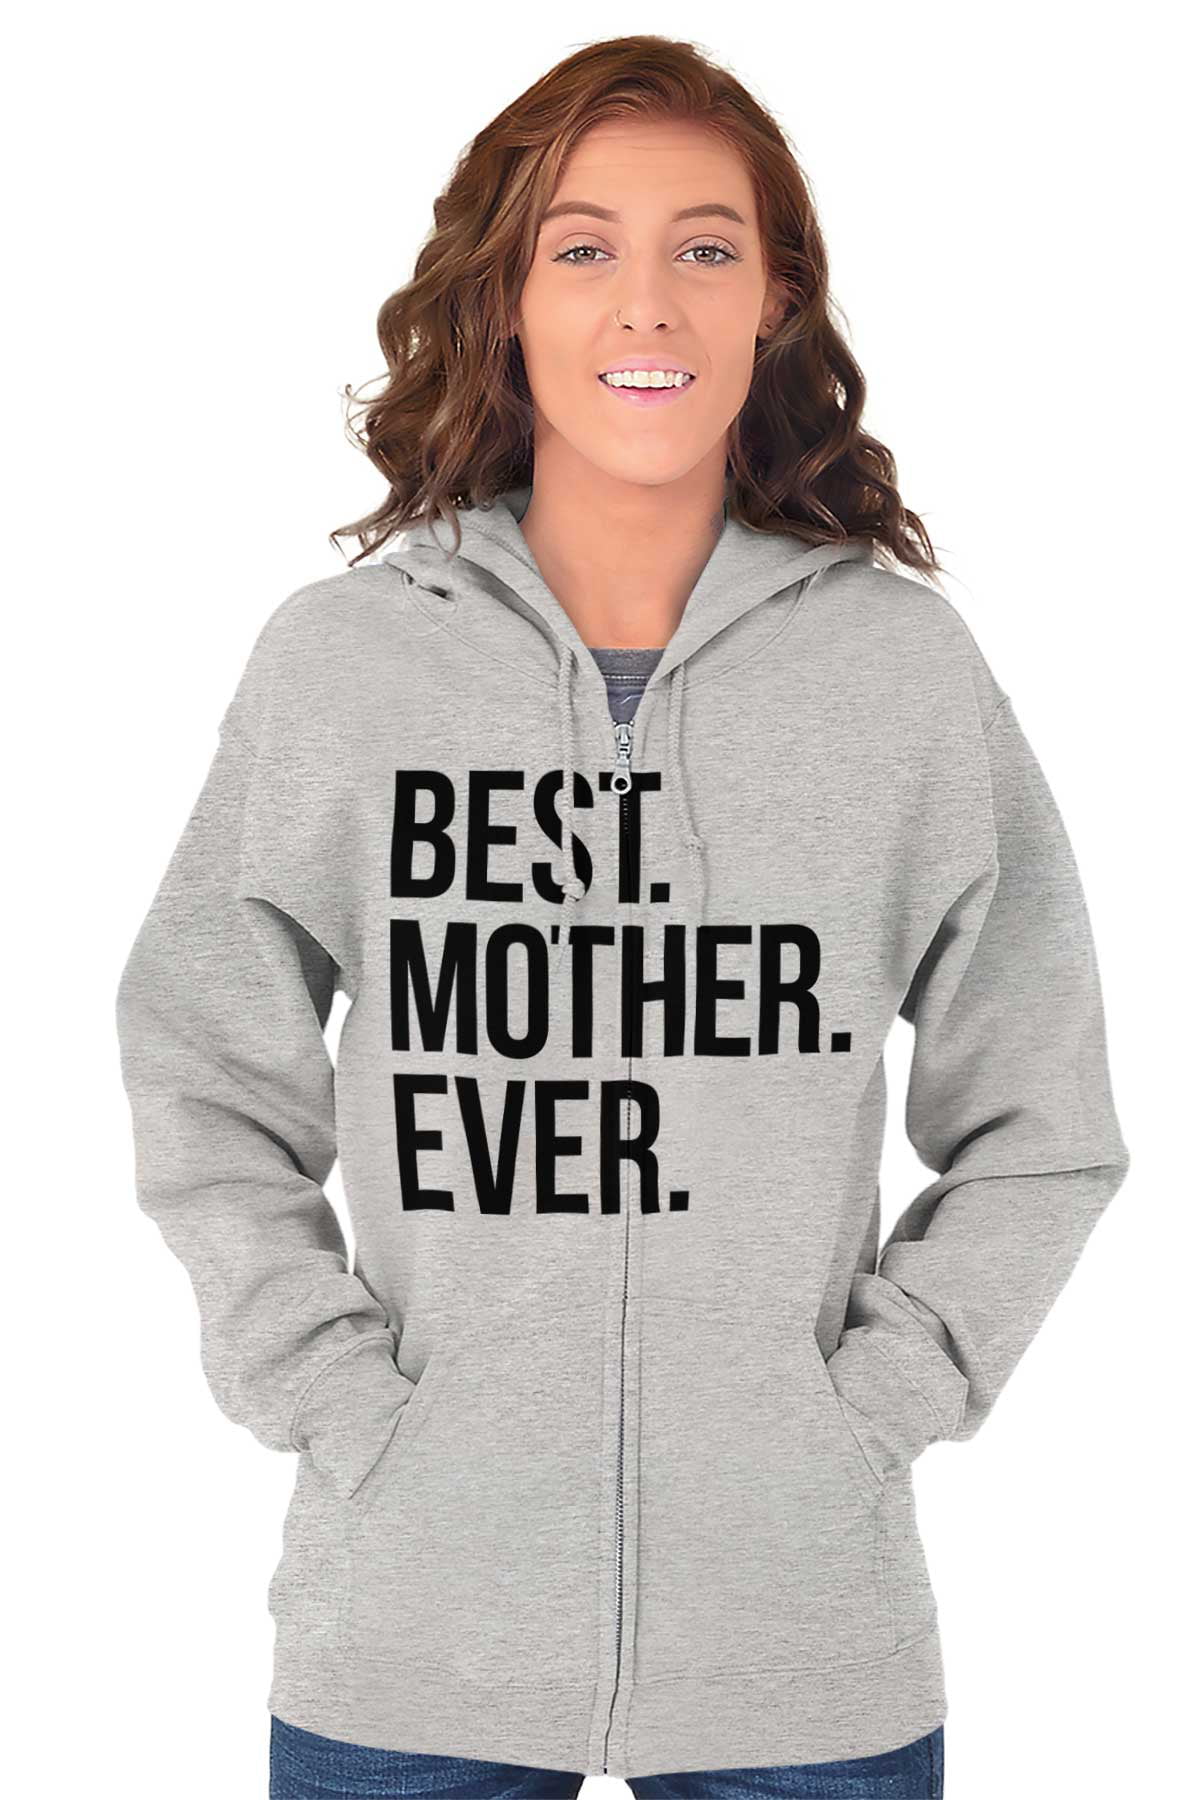 Best Mom Ever Cute Happy Mothers Day Zip Hoodie Sweatshirt Women Brisco  Brands M